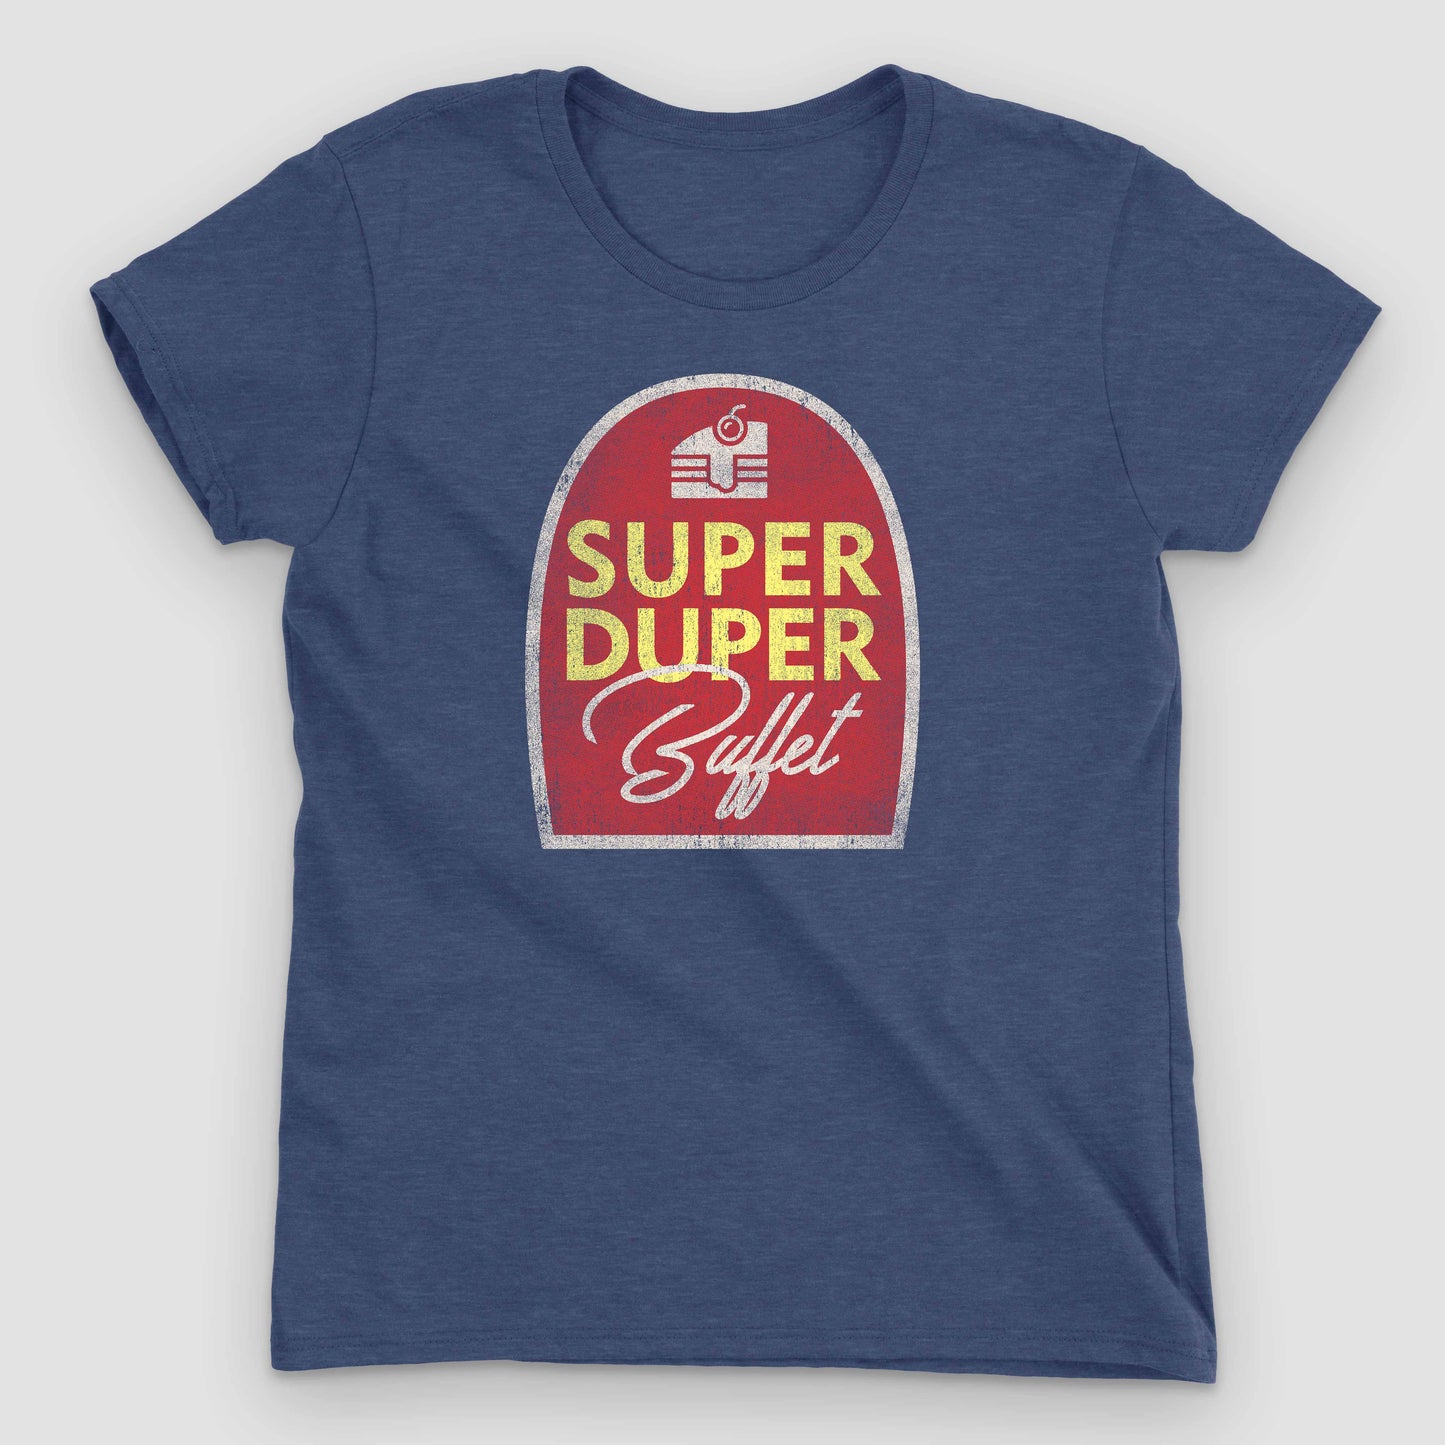 Heather Blue Super Duper Buffet Women's T-Shirt by Snaxtime